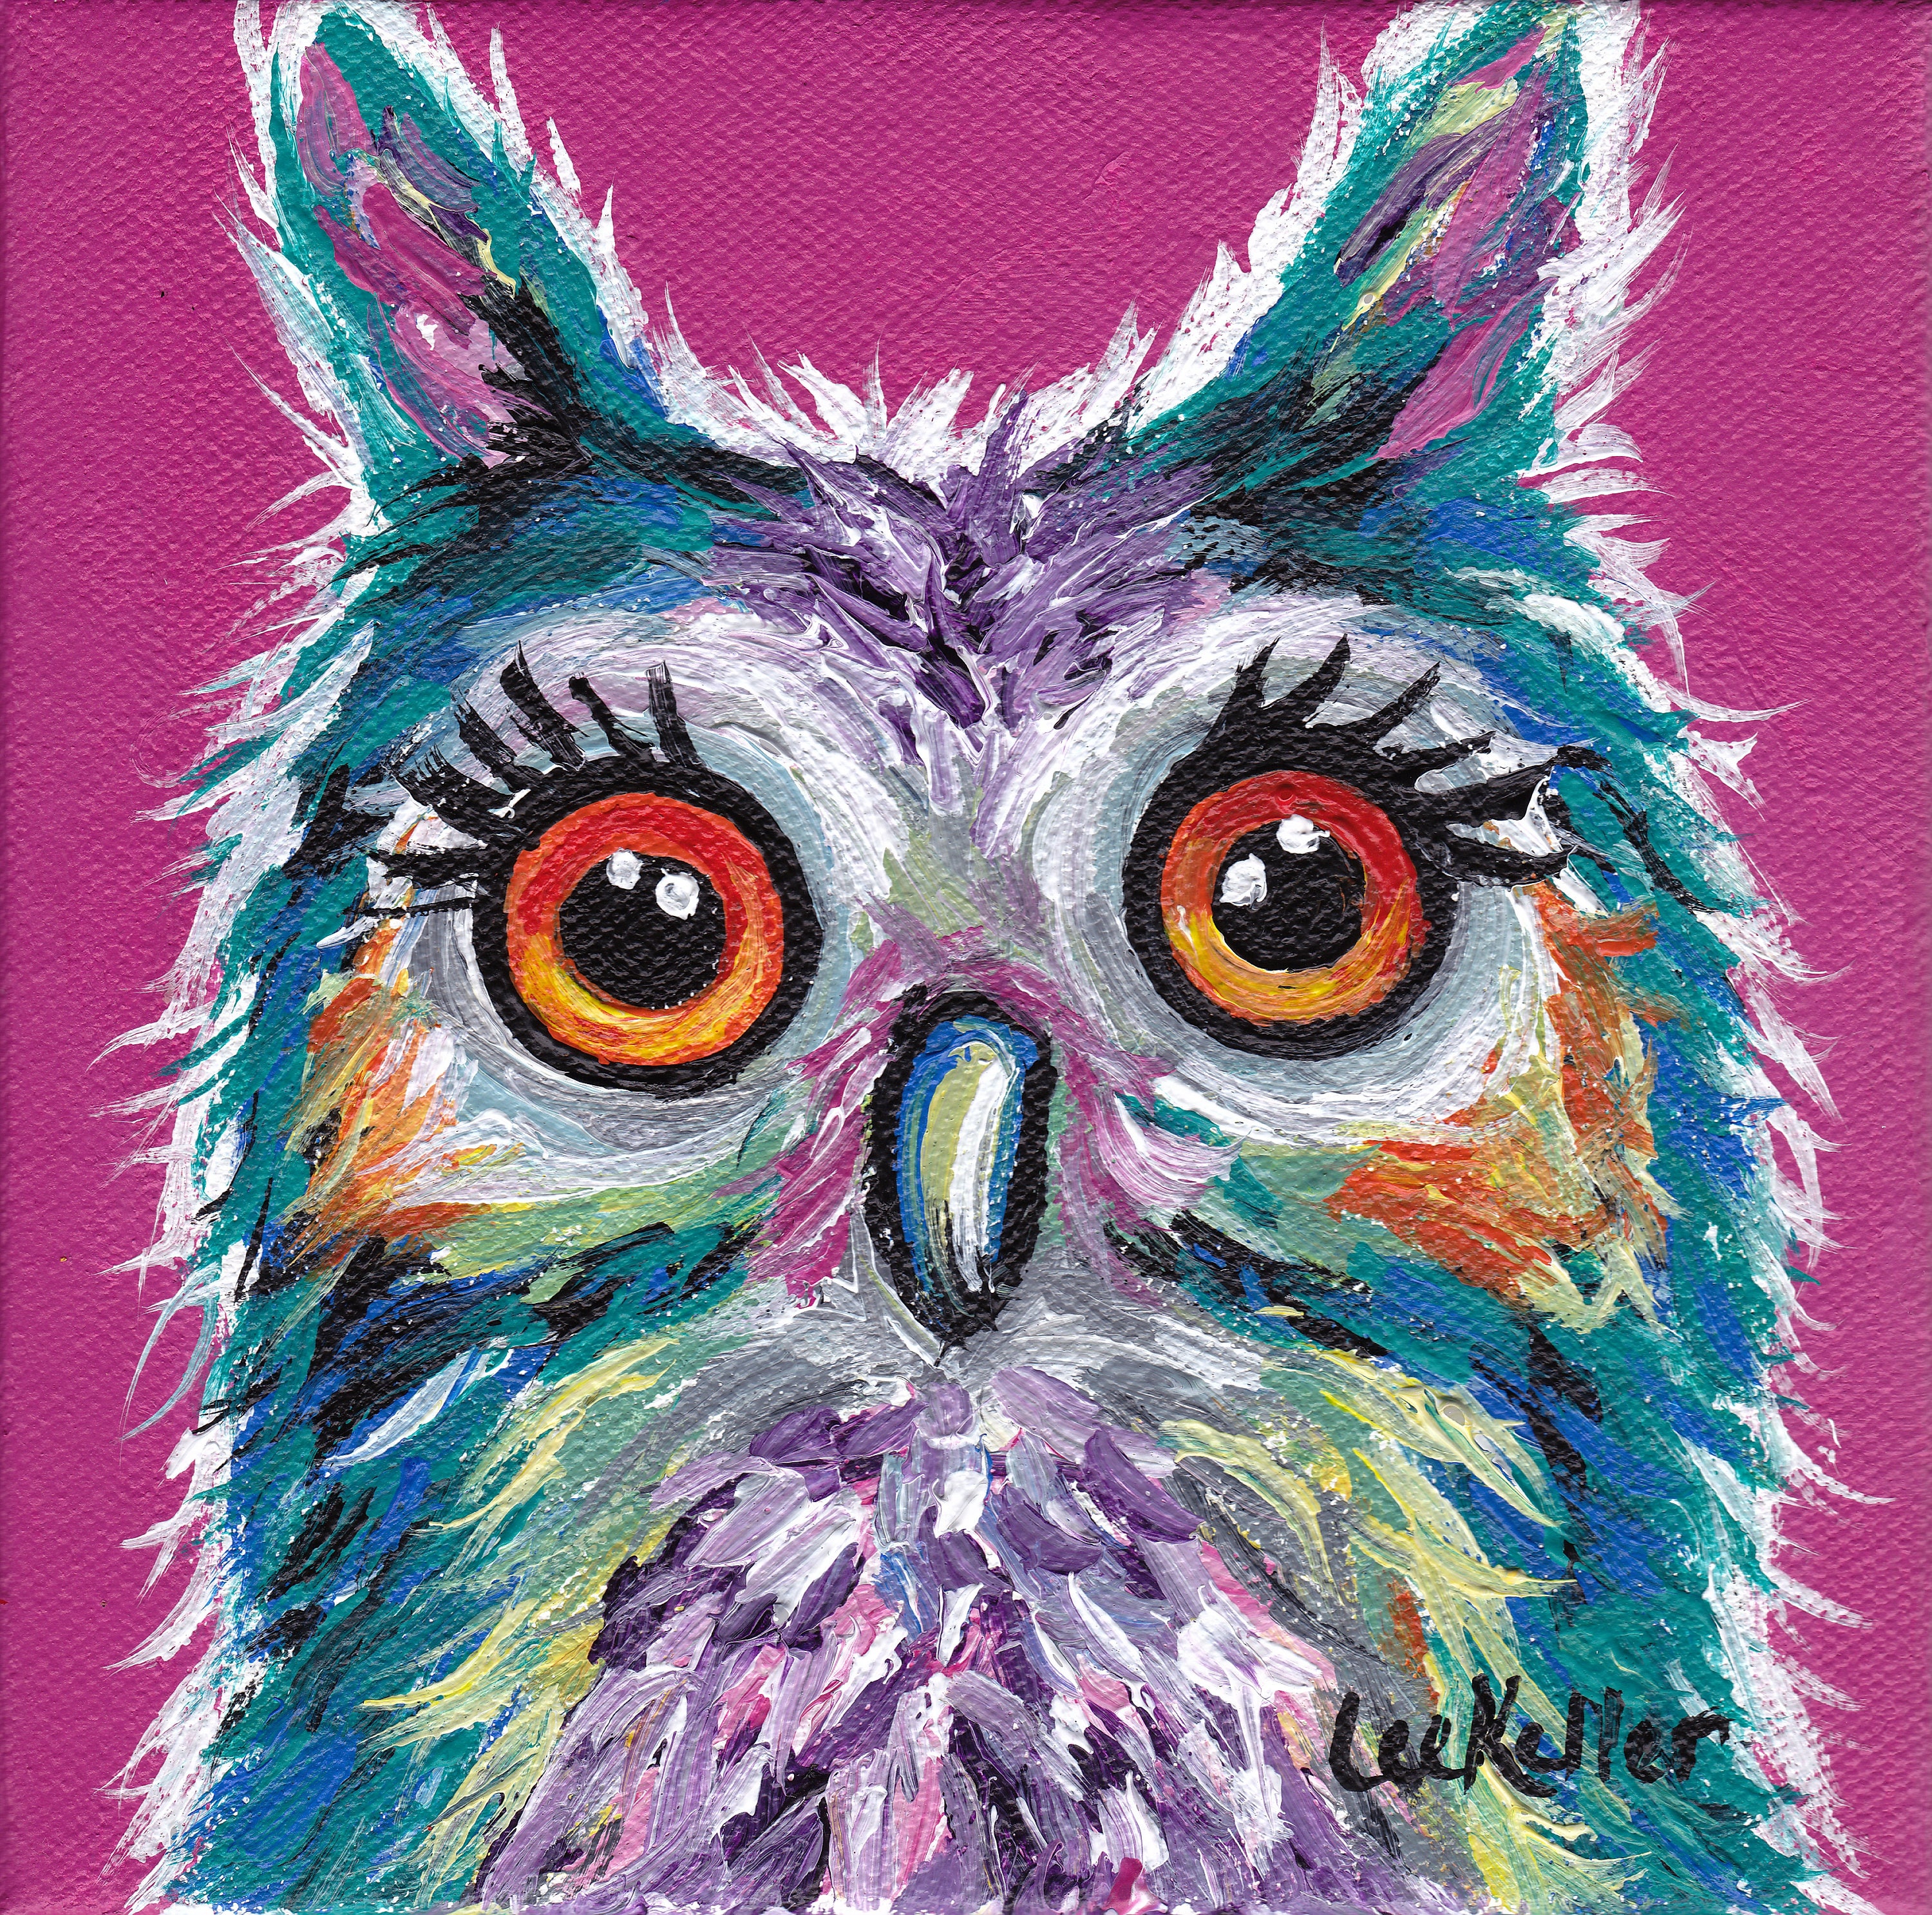  Colorful  Owl  art print Owl  art print colorful  owl  prints